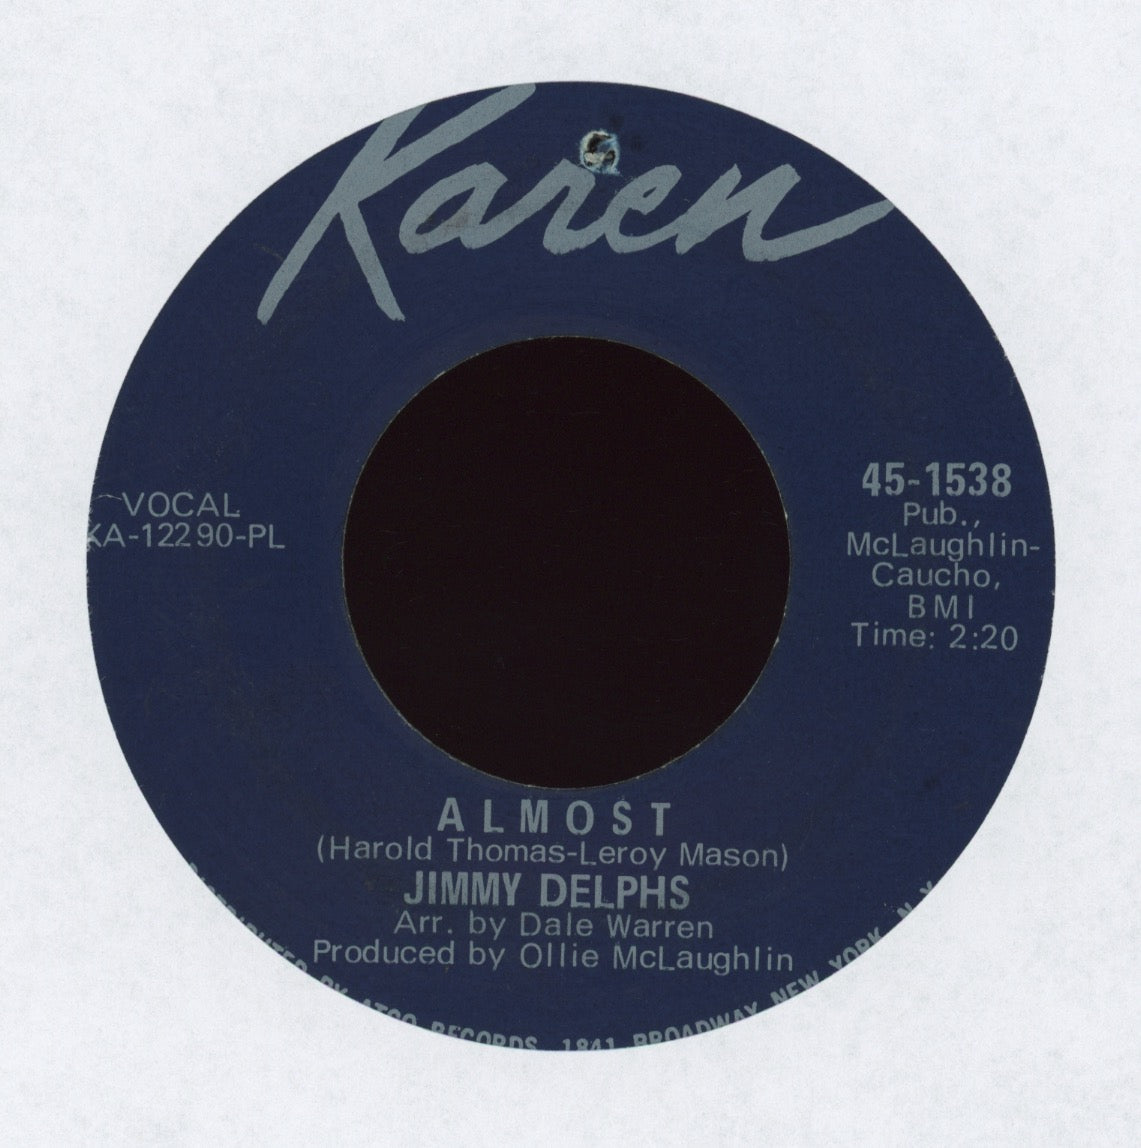 Jimmy Delphs - Almost on Karen